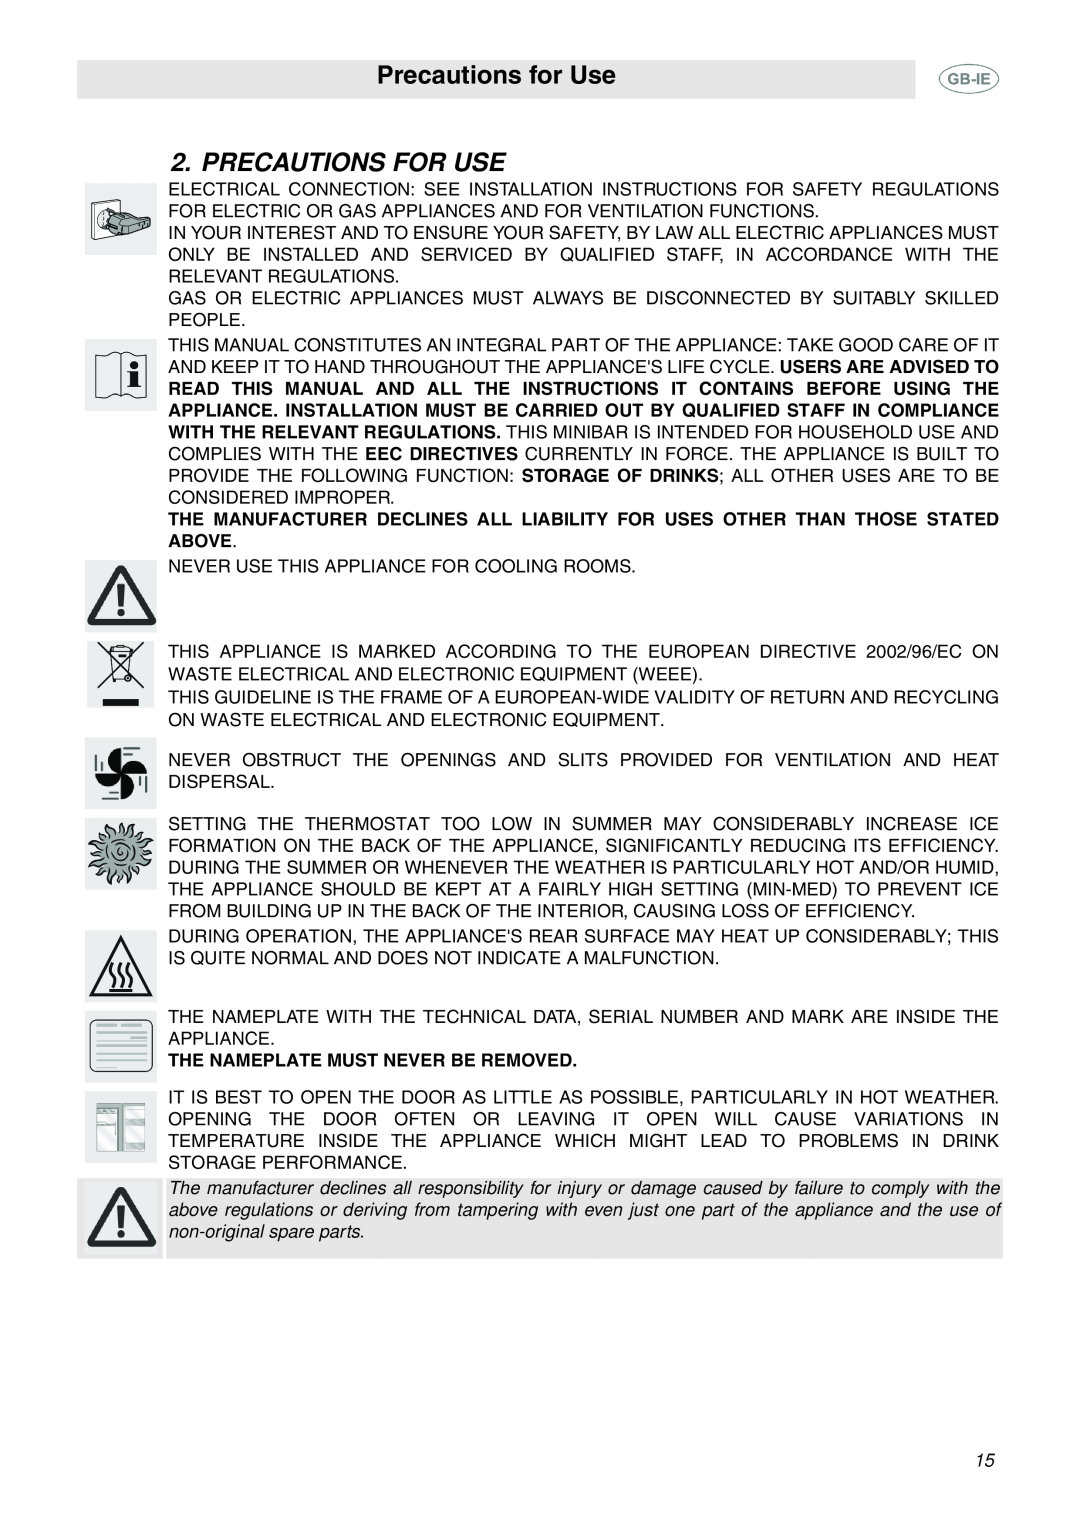 Smeg 914773118 manual Precautions for Use, Precautions For Use 